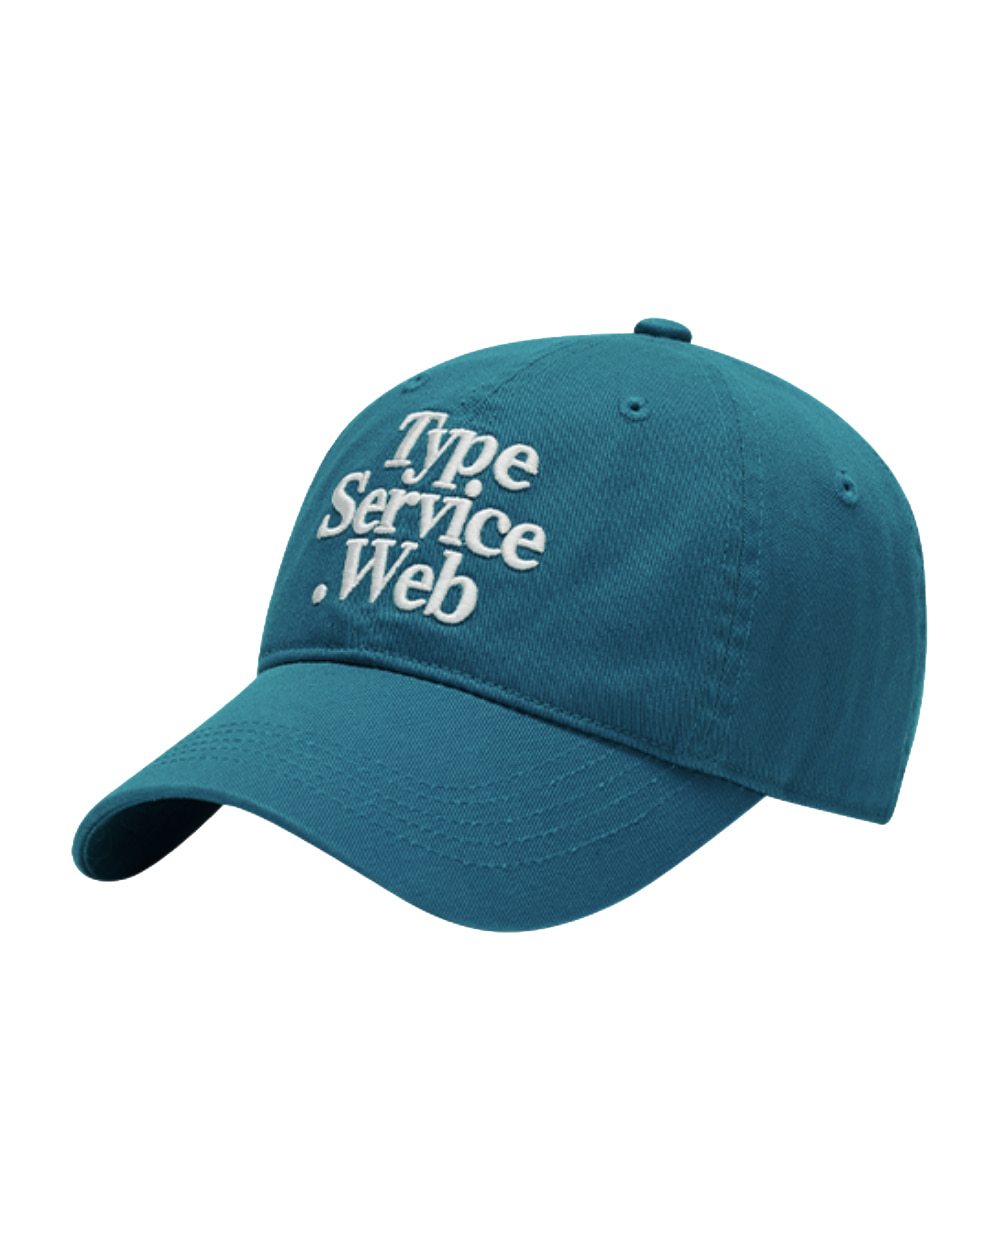 타입서비스 Typeservice Web Cap (Emerald Blue)